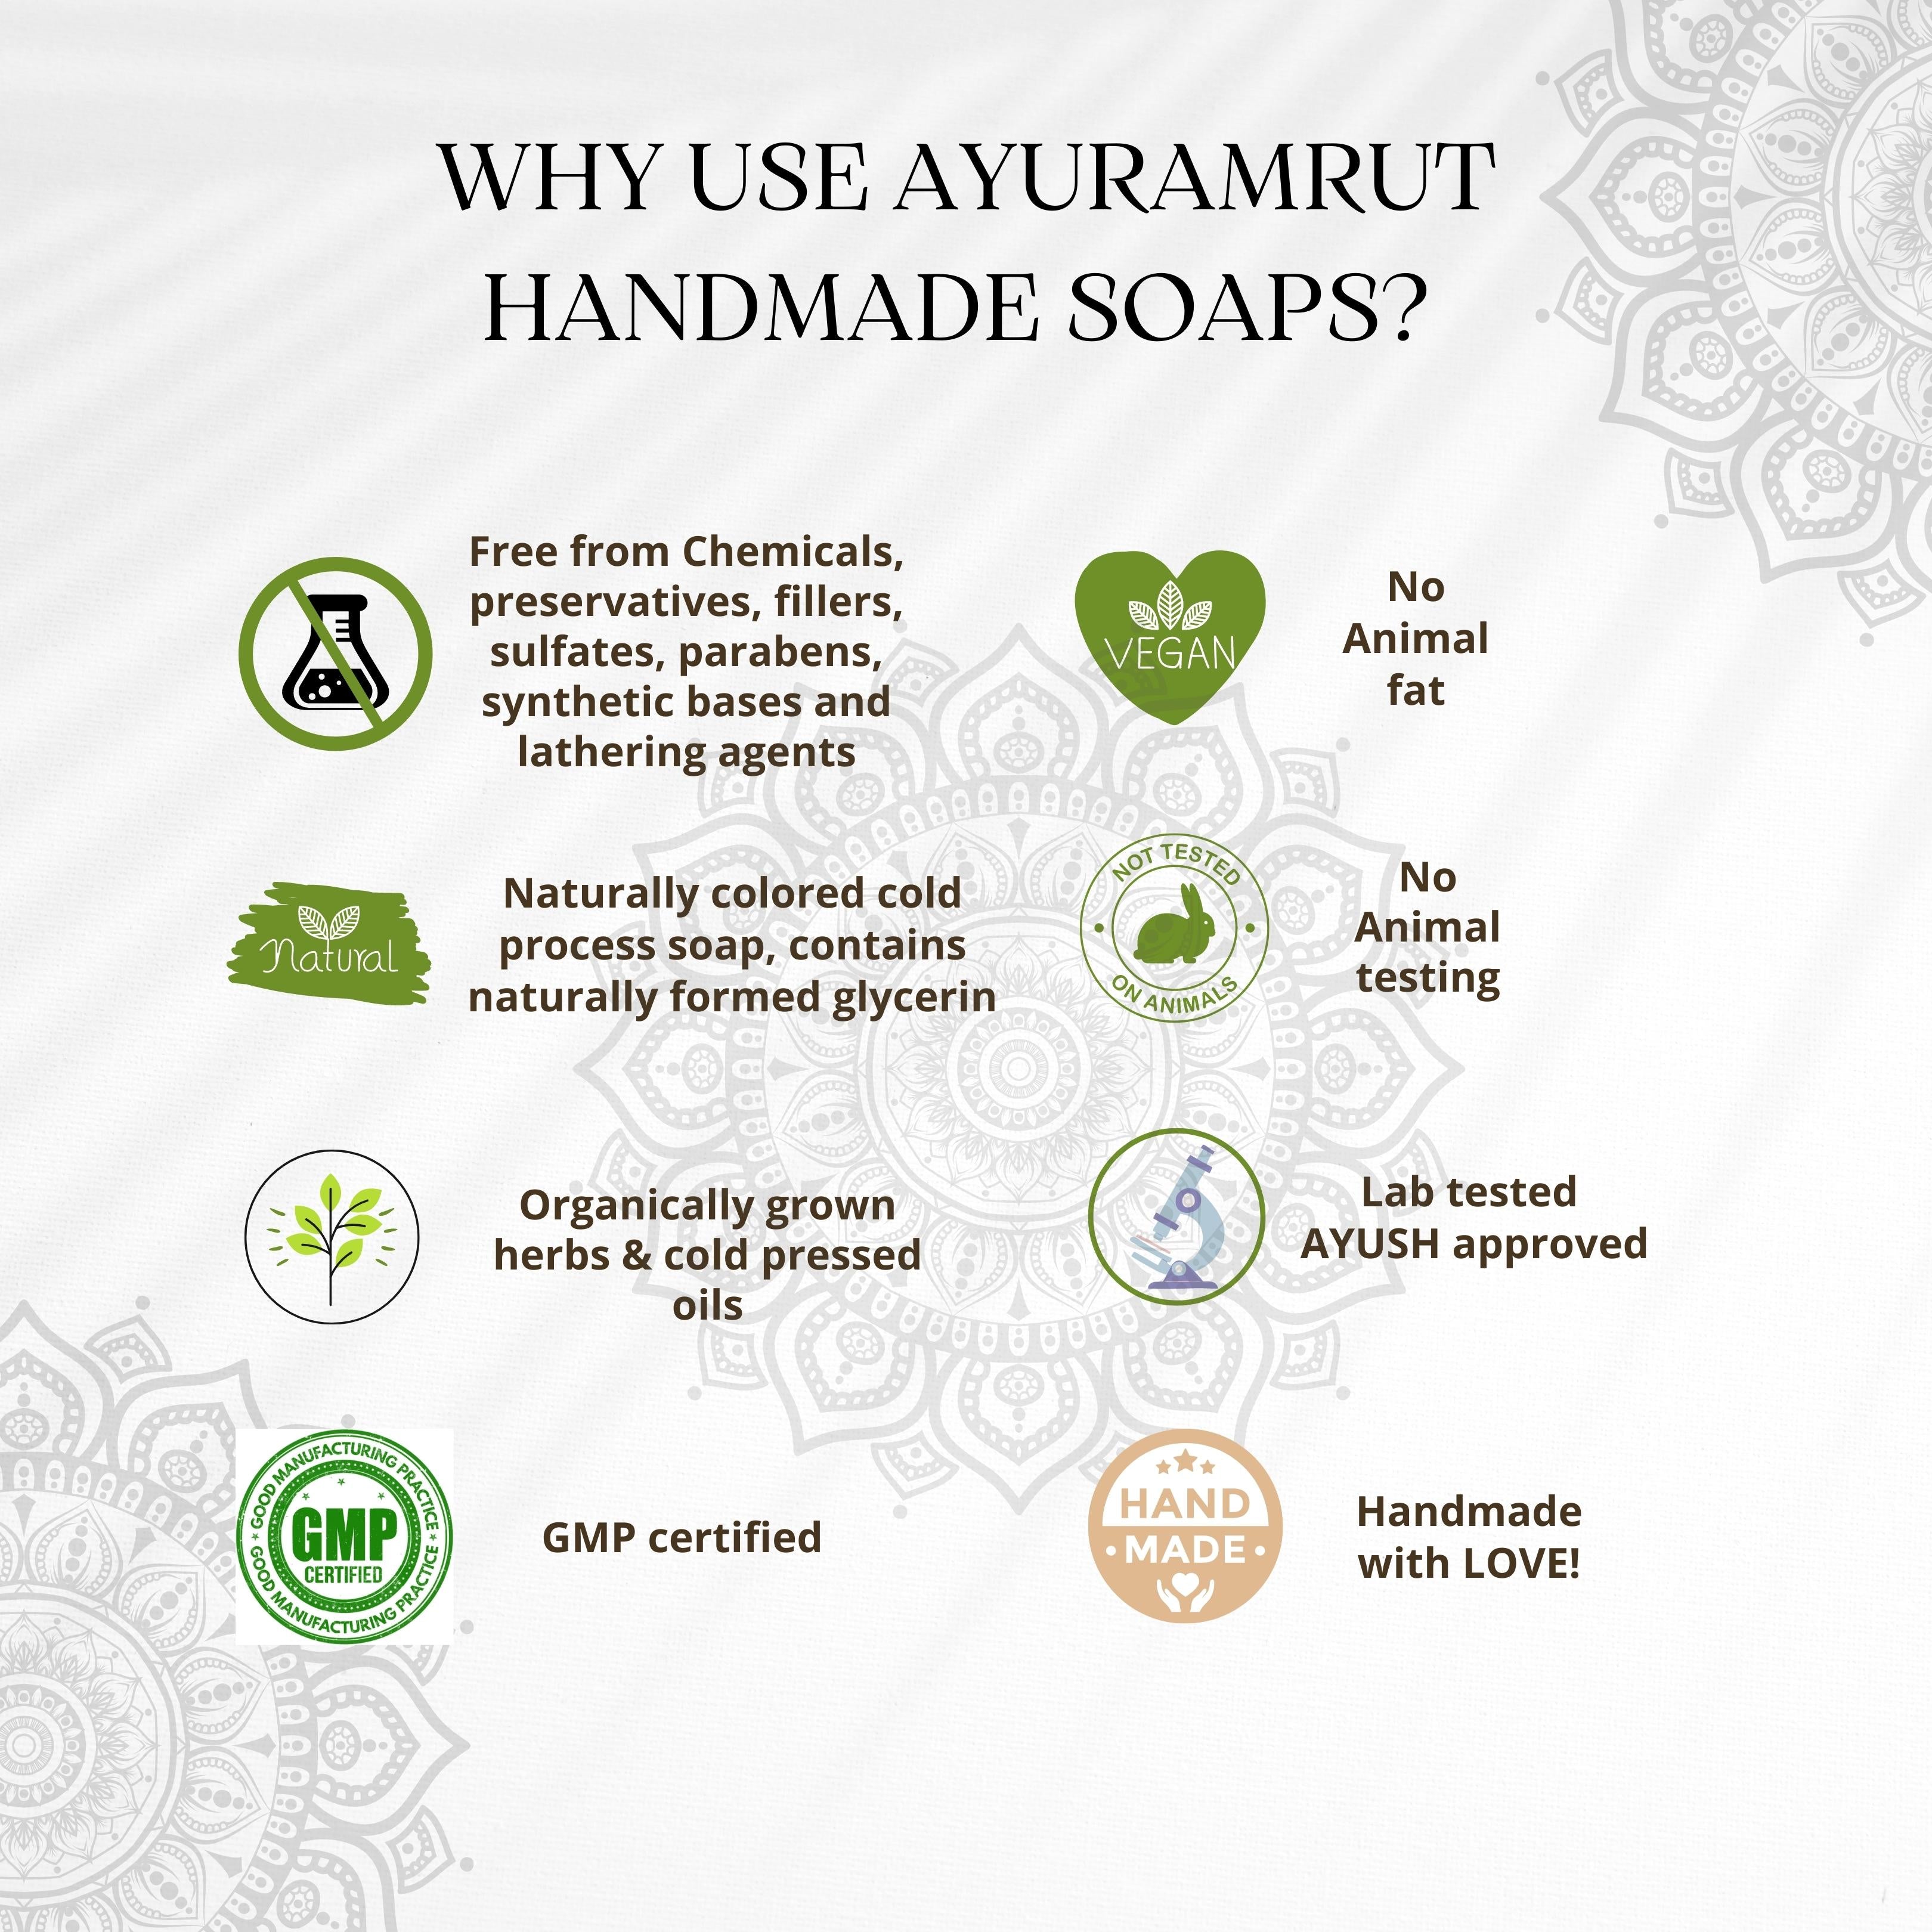 Ayuramrut Neem and Tulsi Natural Handmade Ayurvedic Soap (Pack of 4)